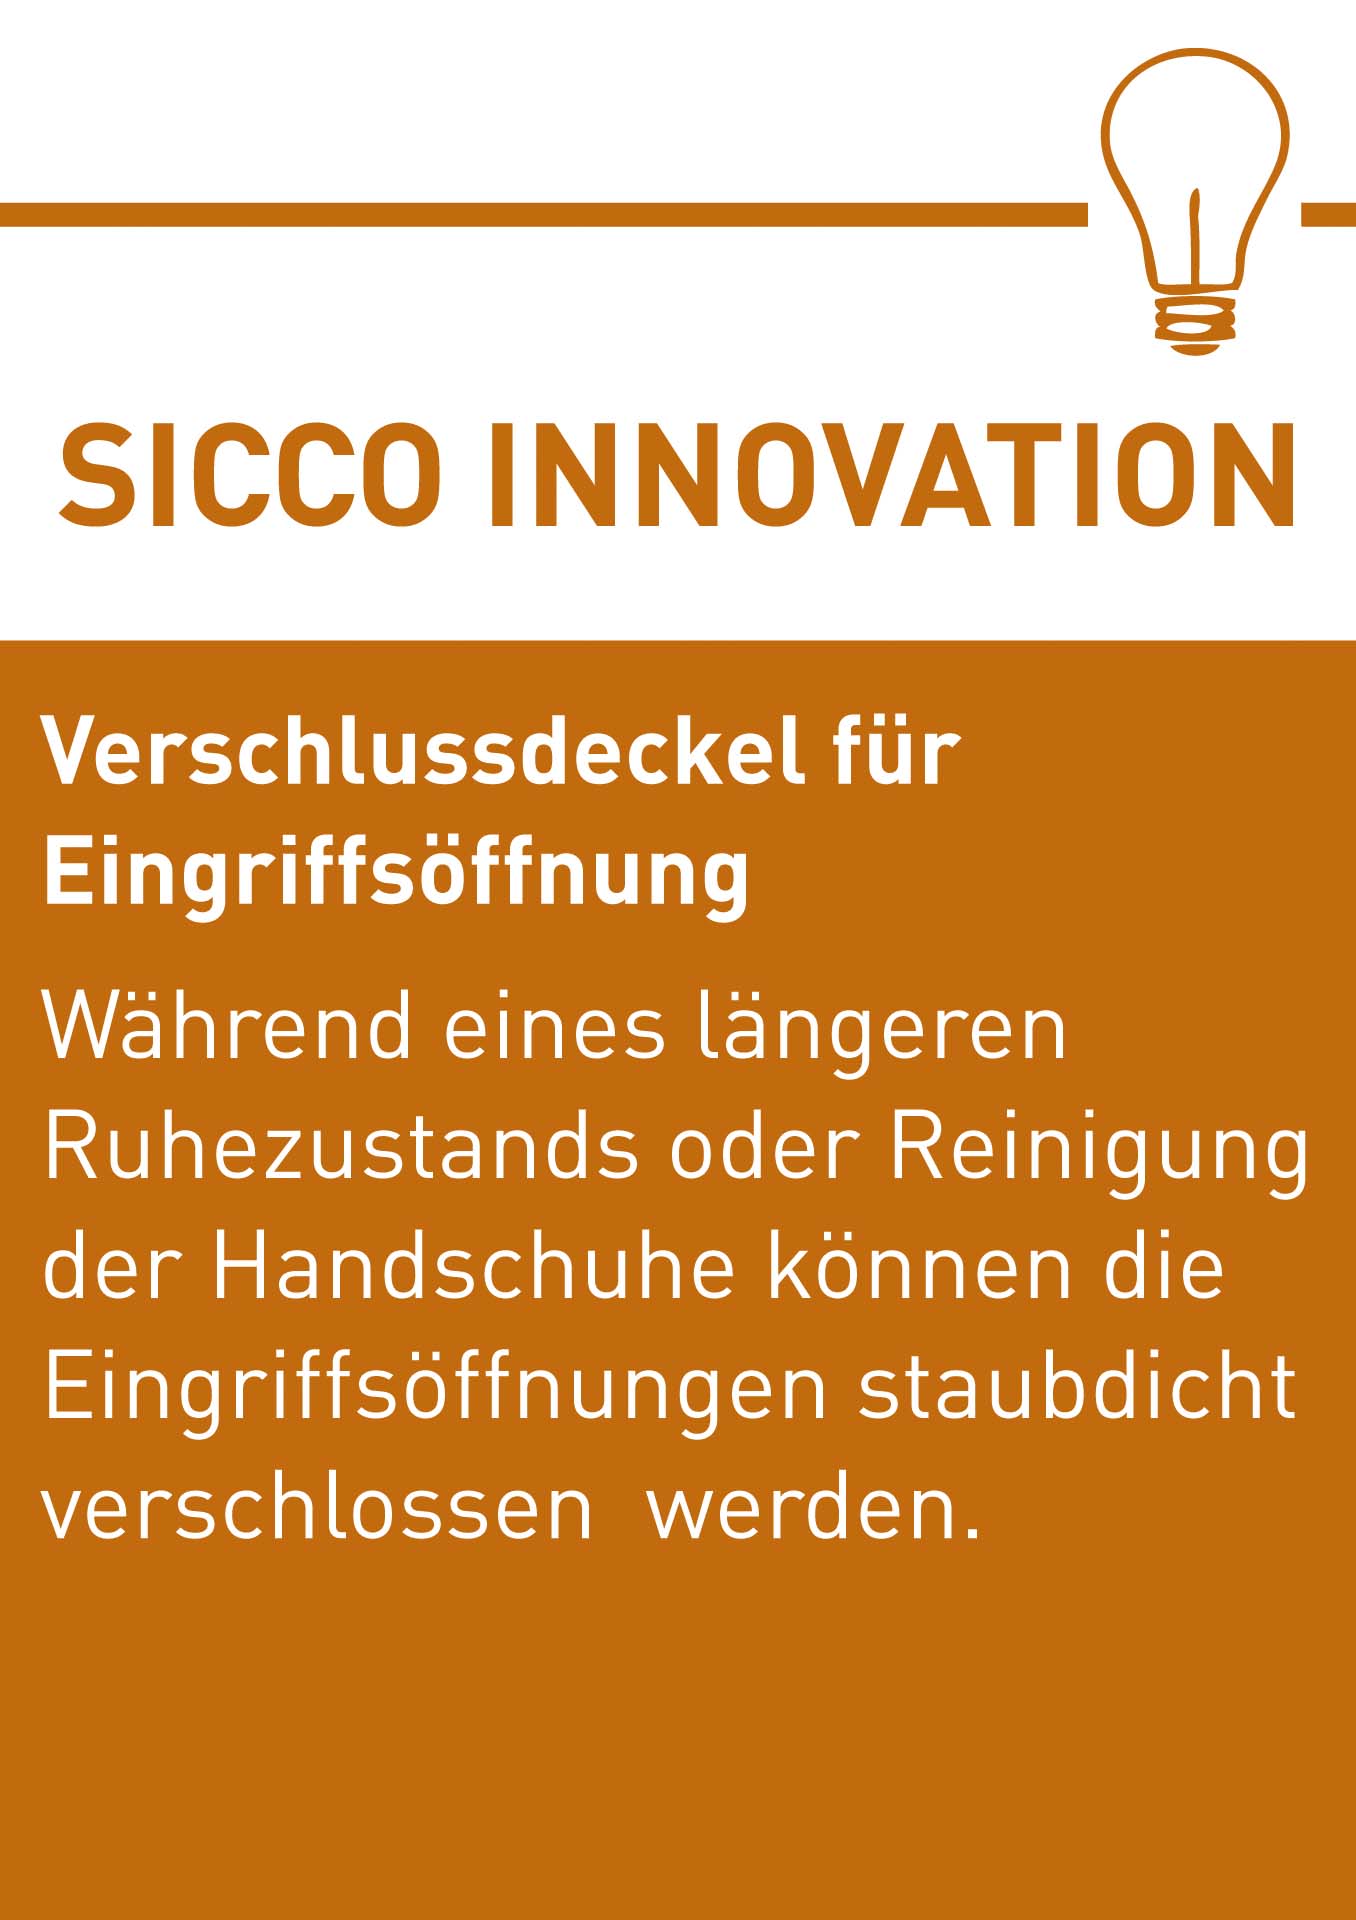 SICCO Innovation Verschlussdeckel D.jpg